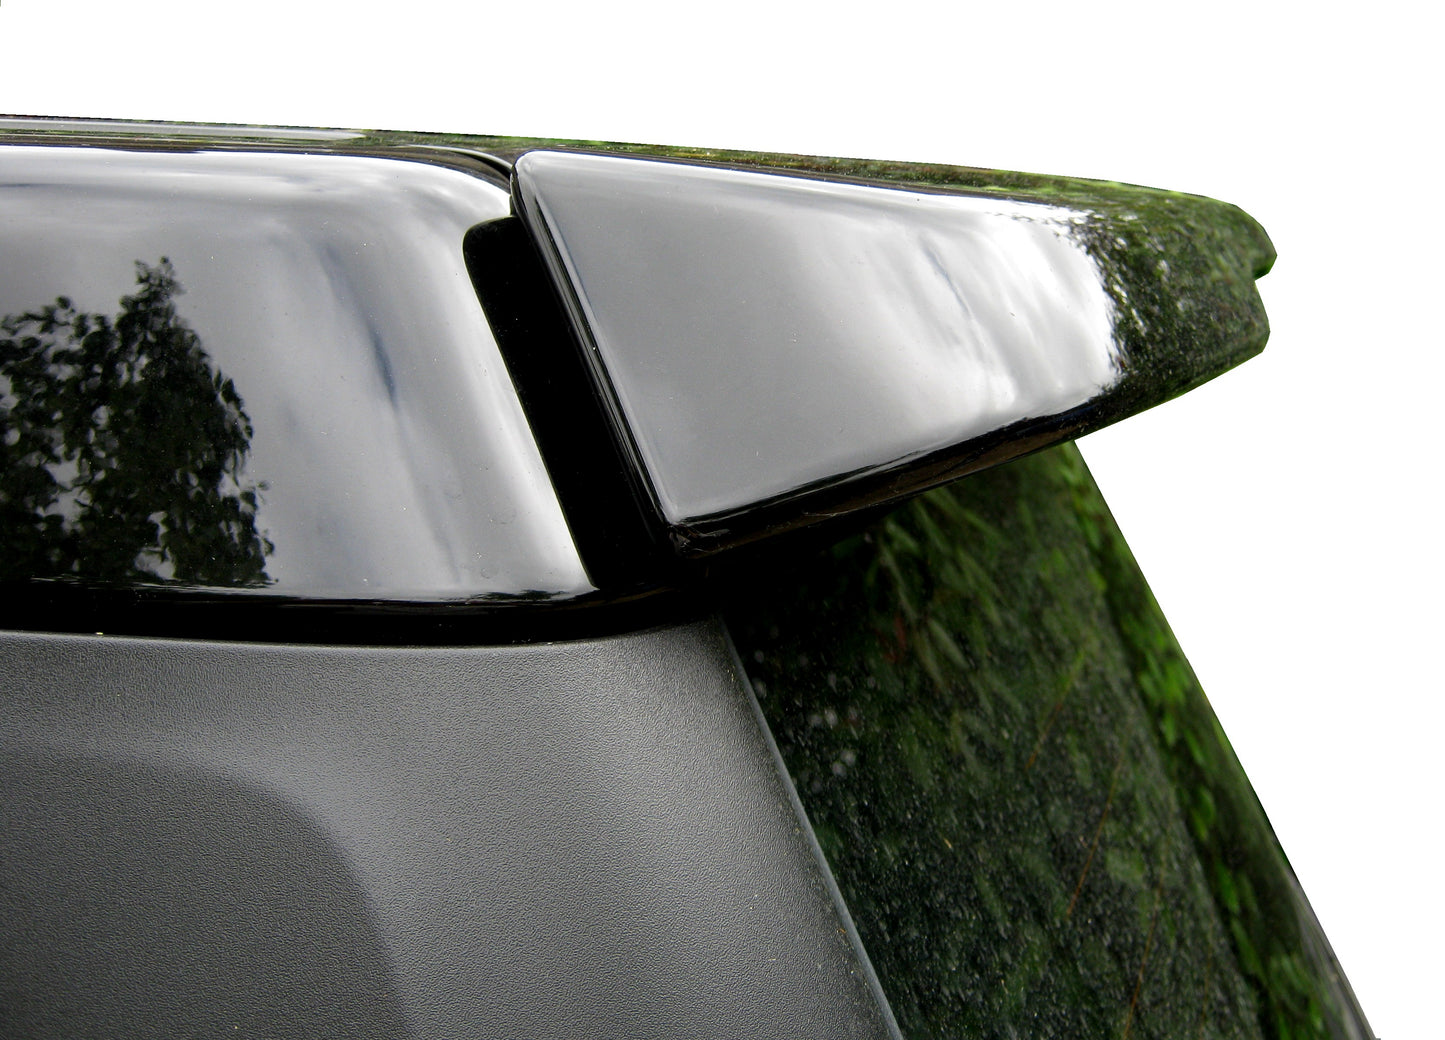 Rear Tailgate Spoiler Kit - Santorini Black - for Land Rover Freelander 2